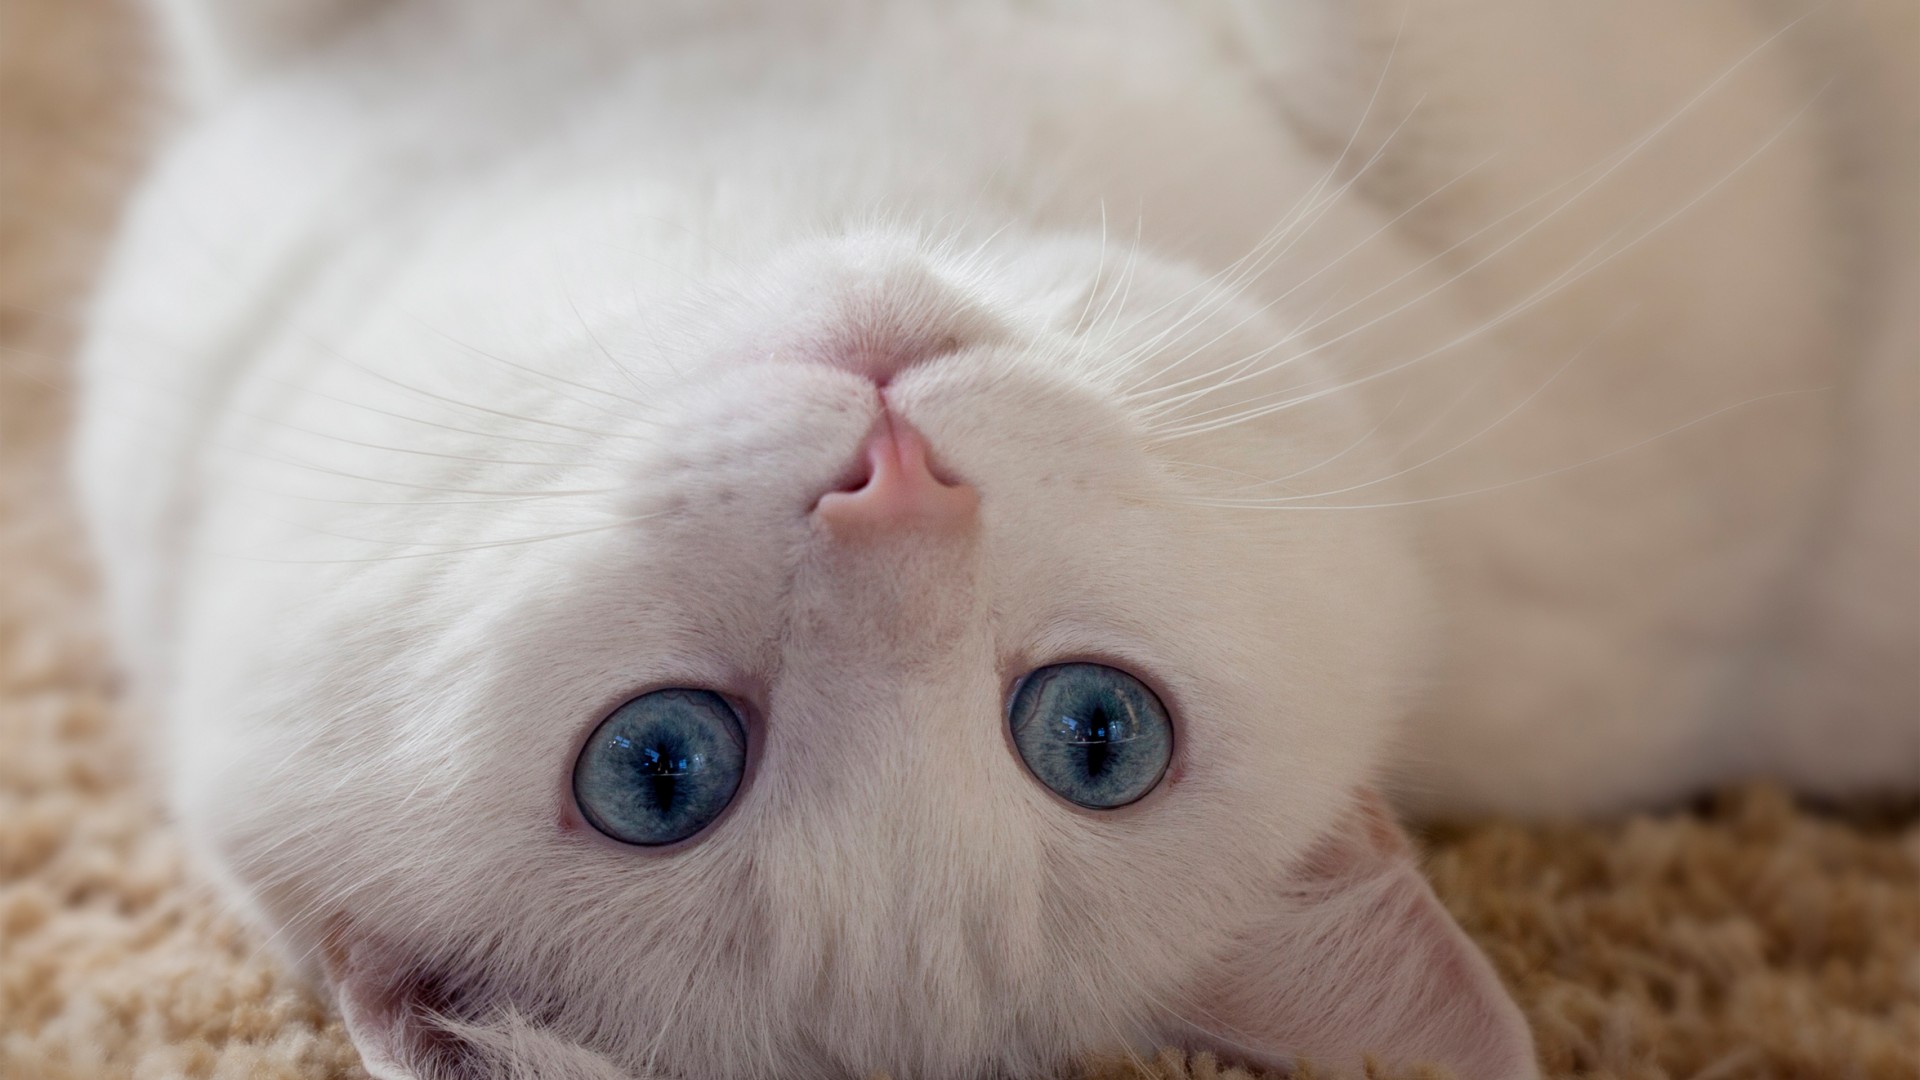 白猫 蓝眼睛 耳朵 胡须 可爱动物壁纸 动物壁纸 壁纸下载 彼岸桌面